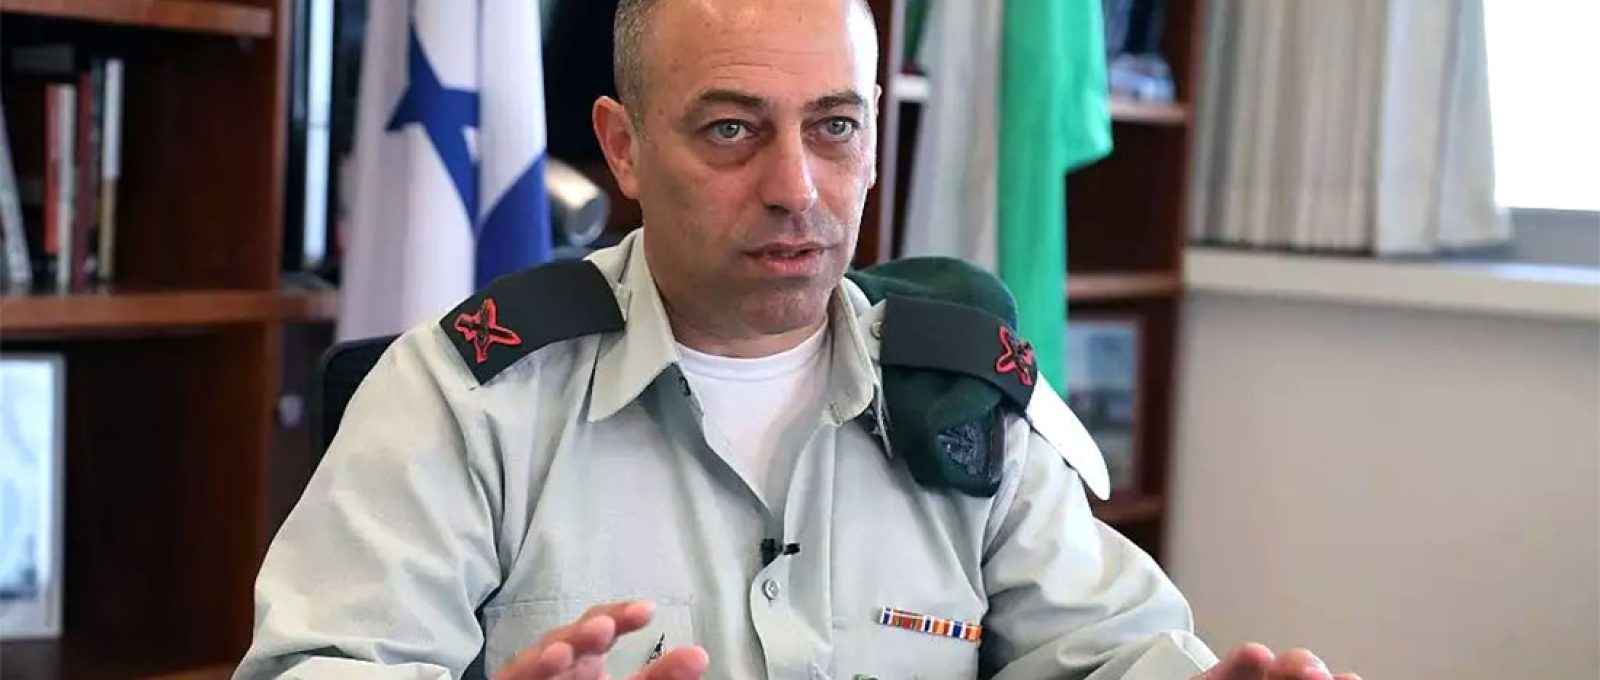 Brigadeiro-general Dror Shalom, em imagem de quando era chefe da Divisão de Pesquisa de Inteligência Militar do IDF (Gideon Markowicz/Israel Hayom).